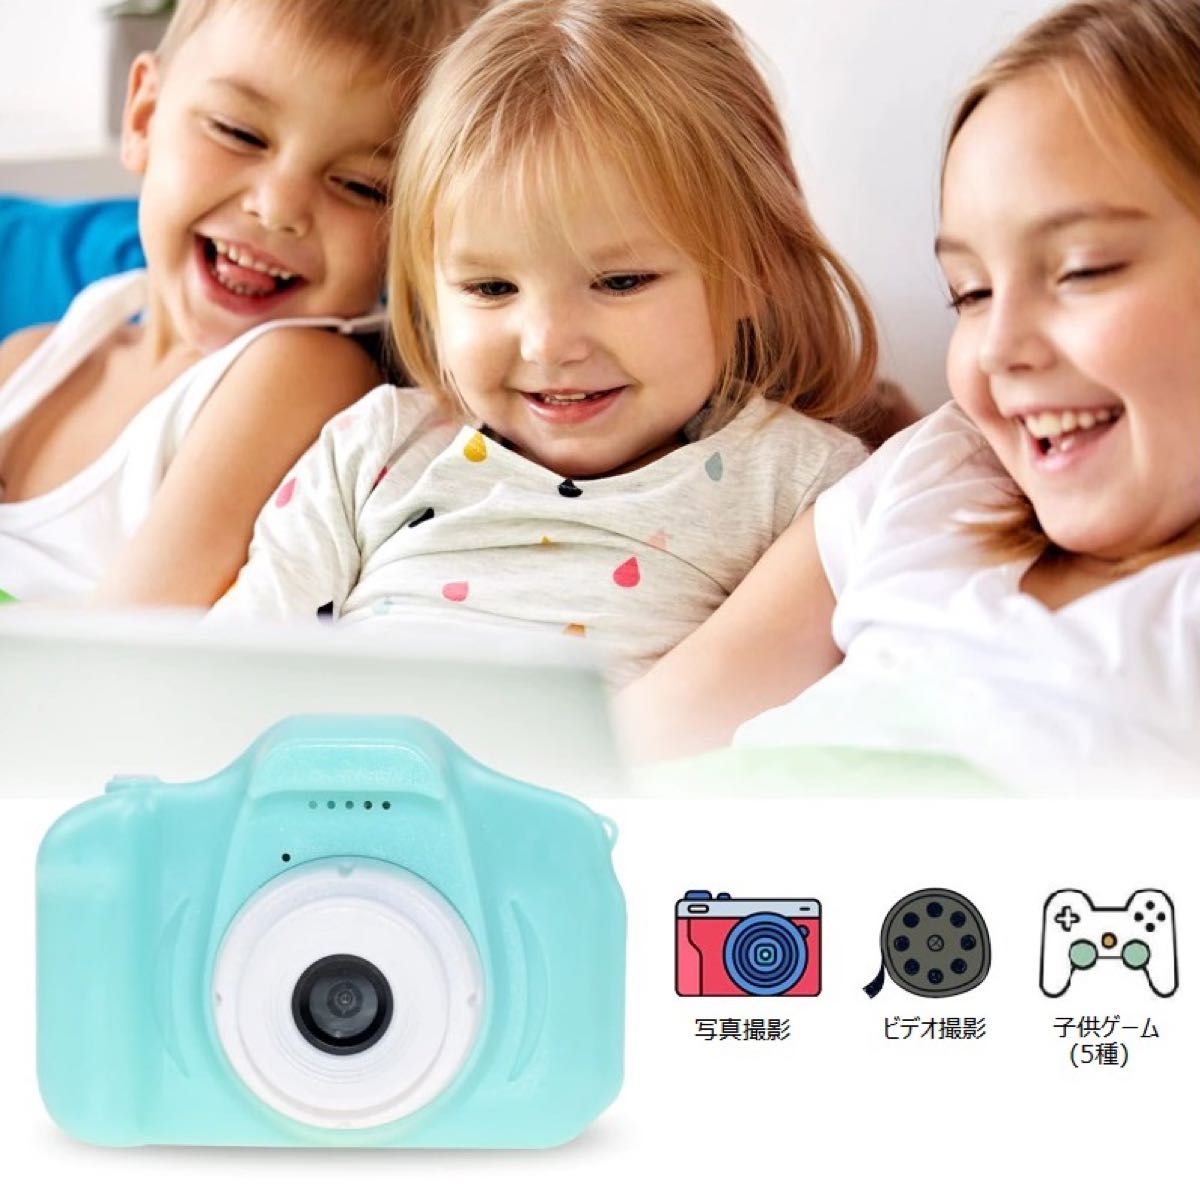 キッズカメラ 子供用デジタルカメラ SDカード コンパクトカメラ 子どもカメラ トイカメラ 入園入学プレゼント 81